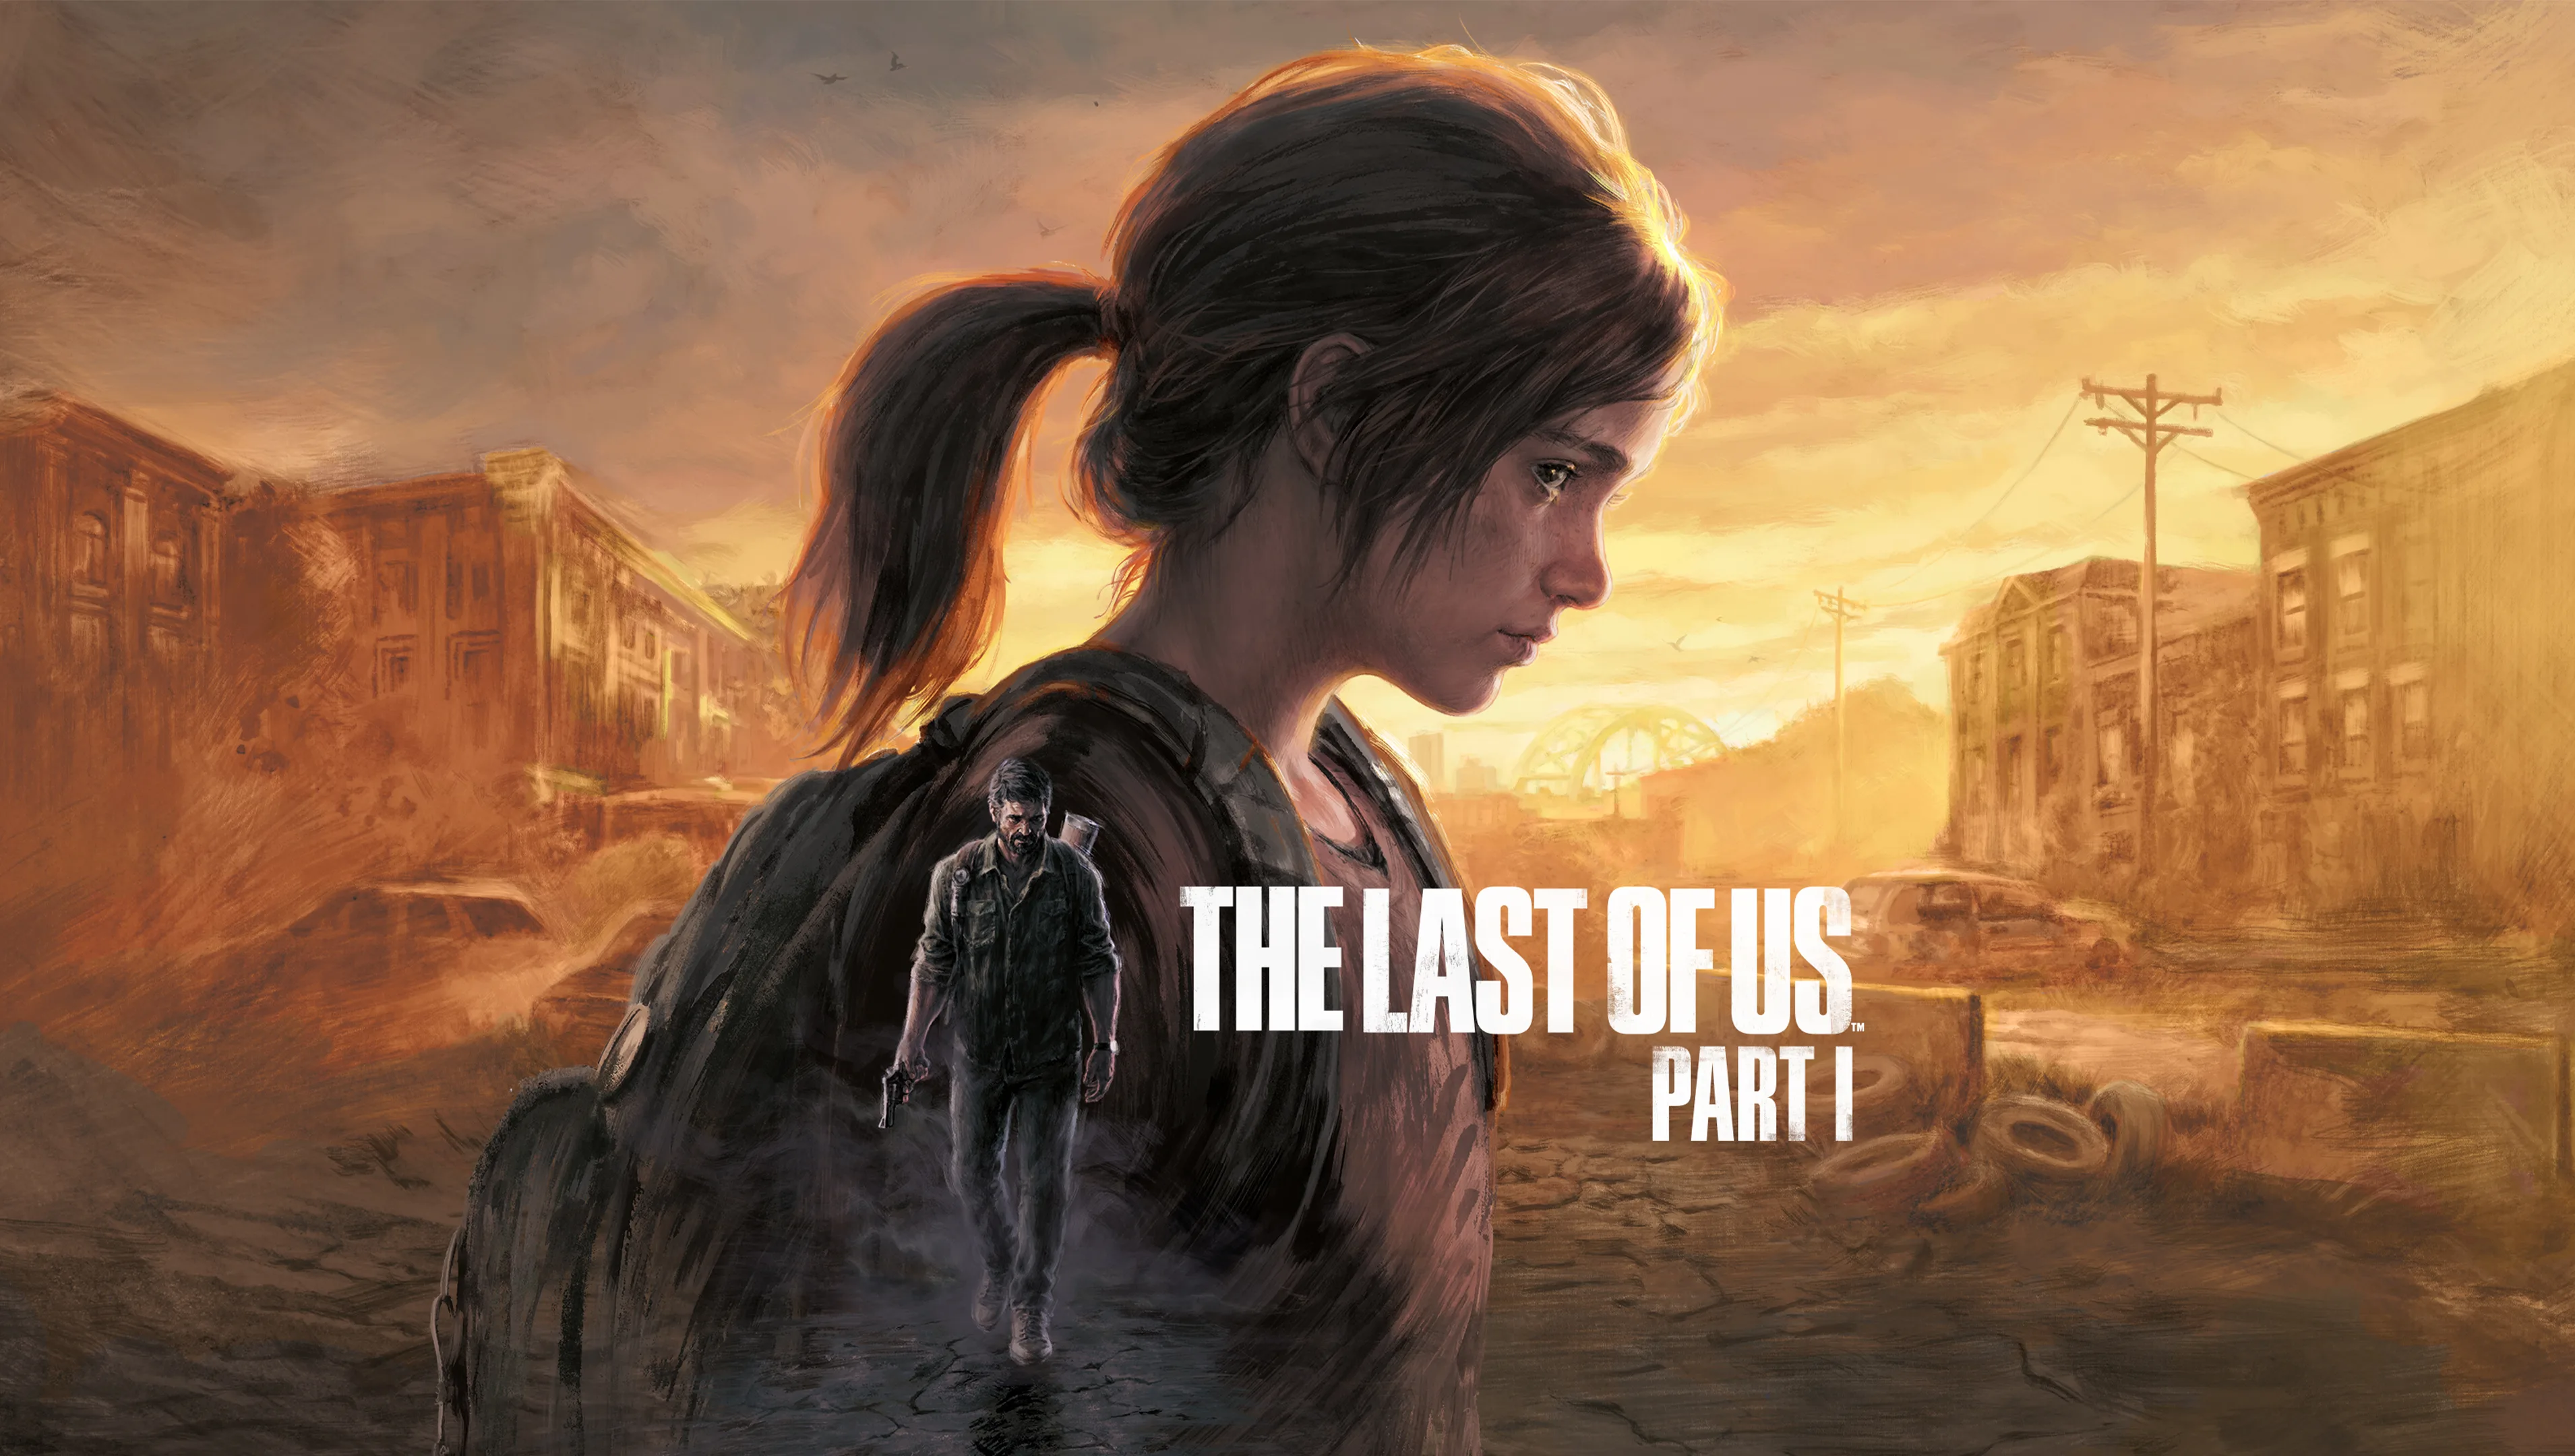 Naughty Dog udostępniło wideo z rozgrywką na PlayStation 5 w ramach remake'u The Last of Us.